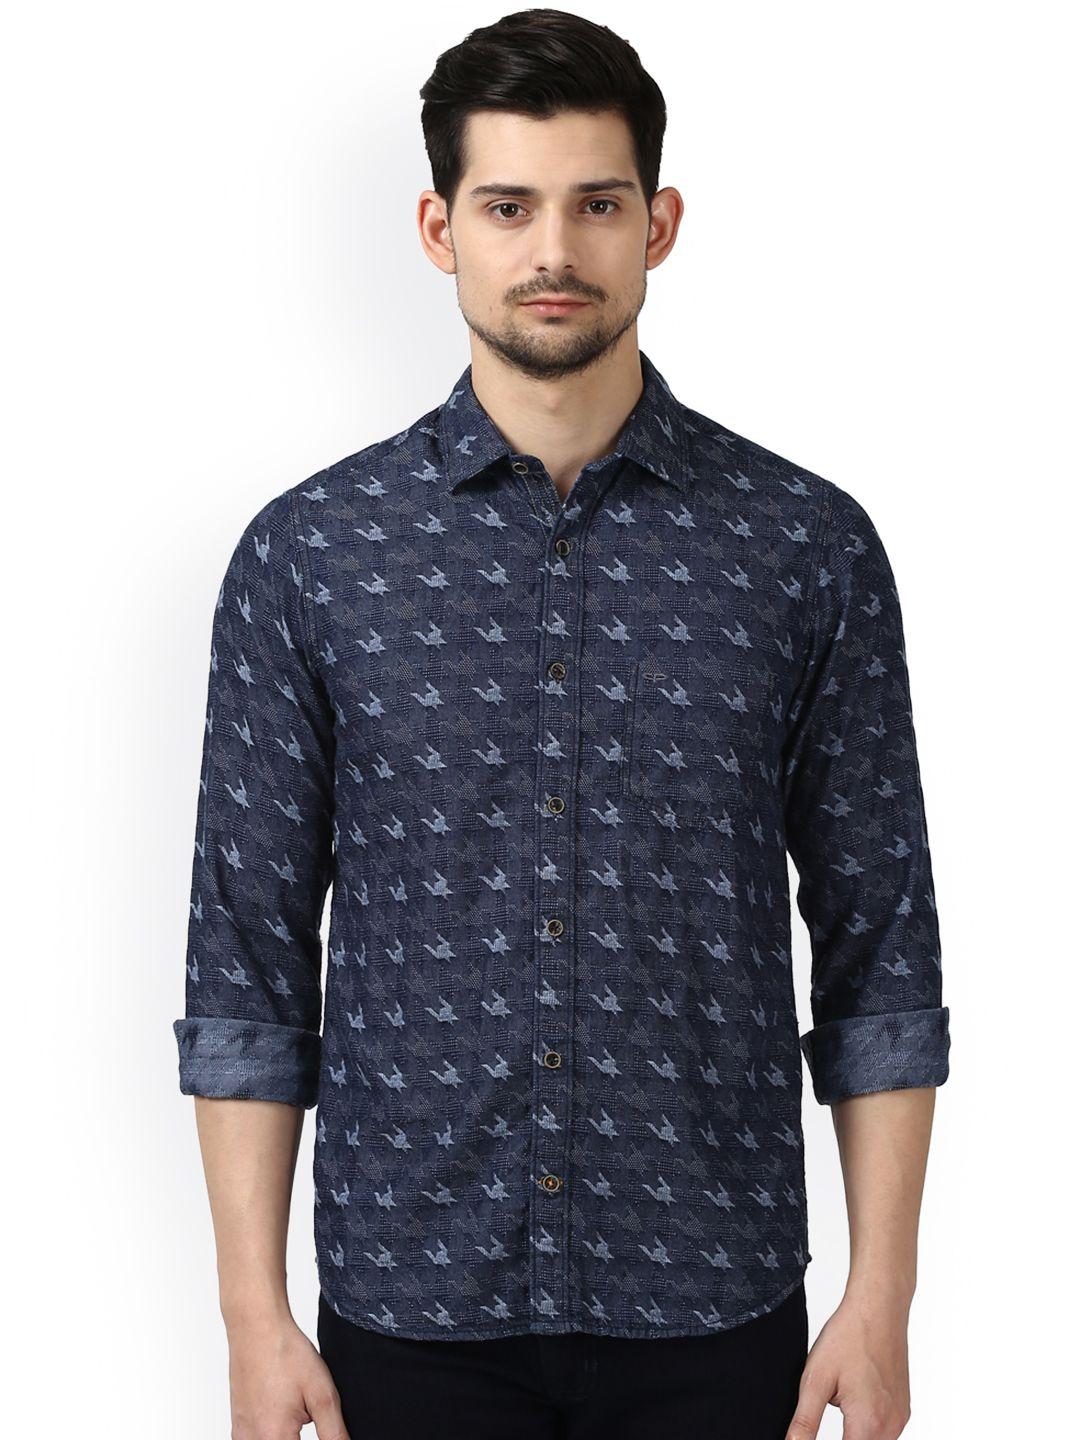 colorplus men navy blue regular fit printed casual shirt